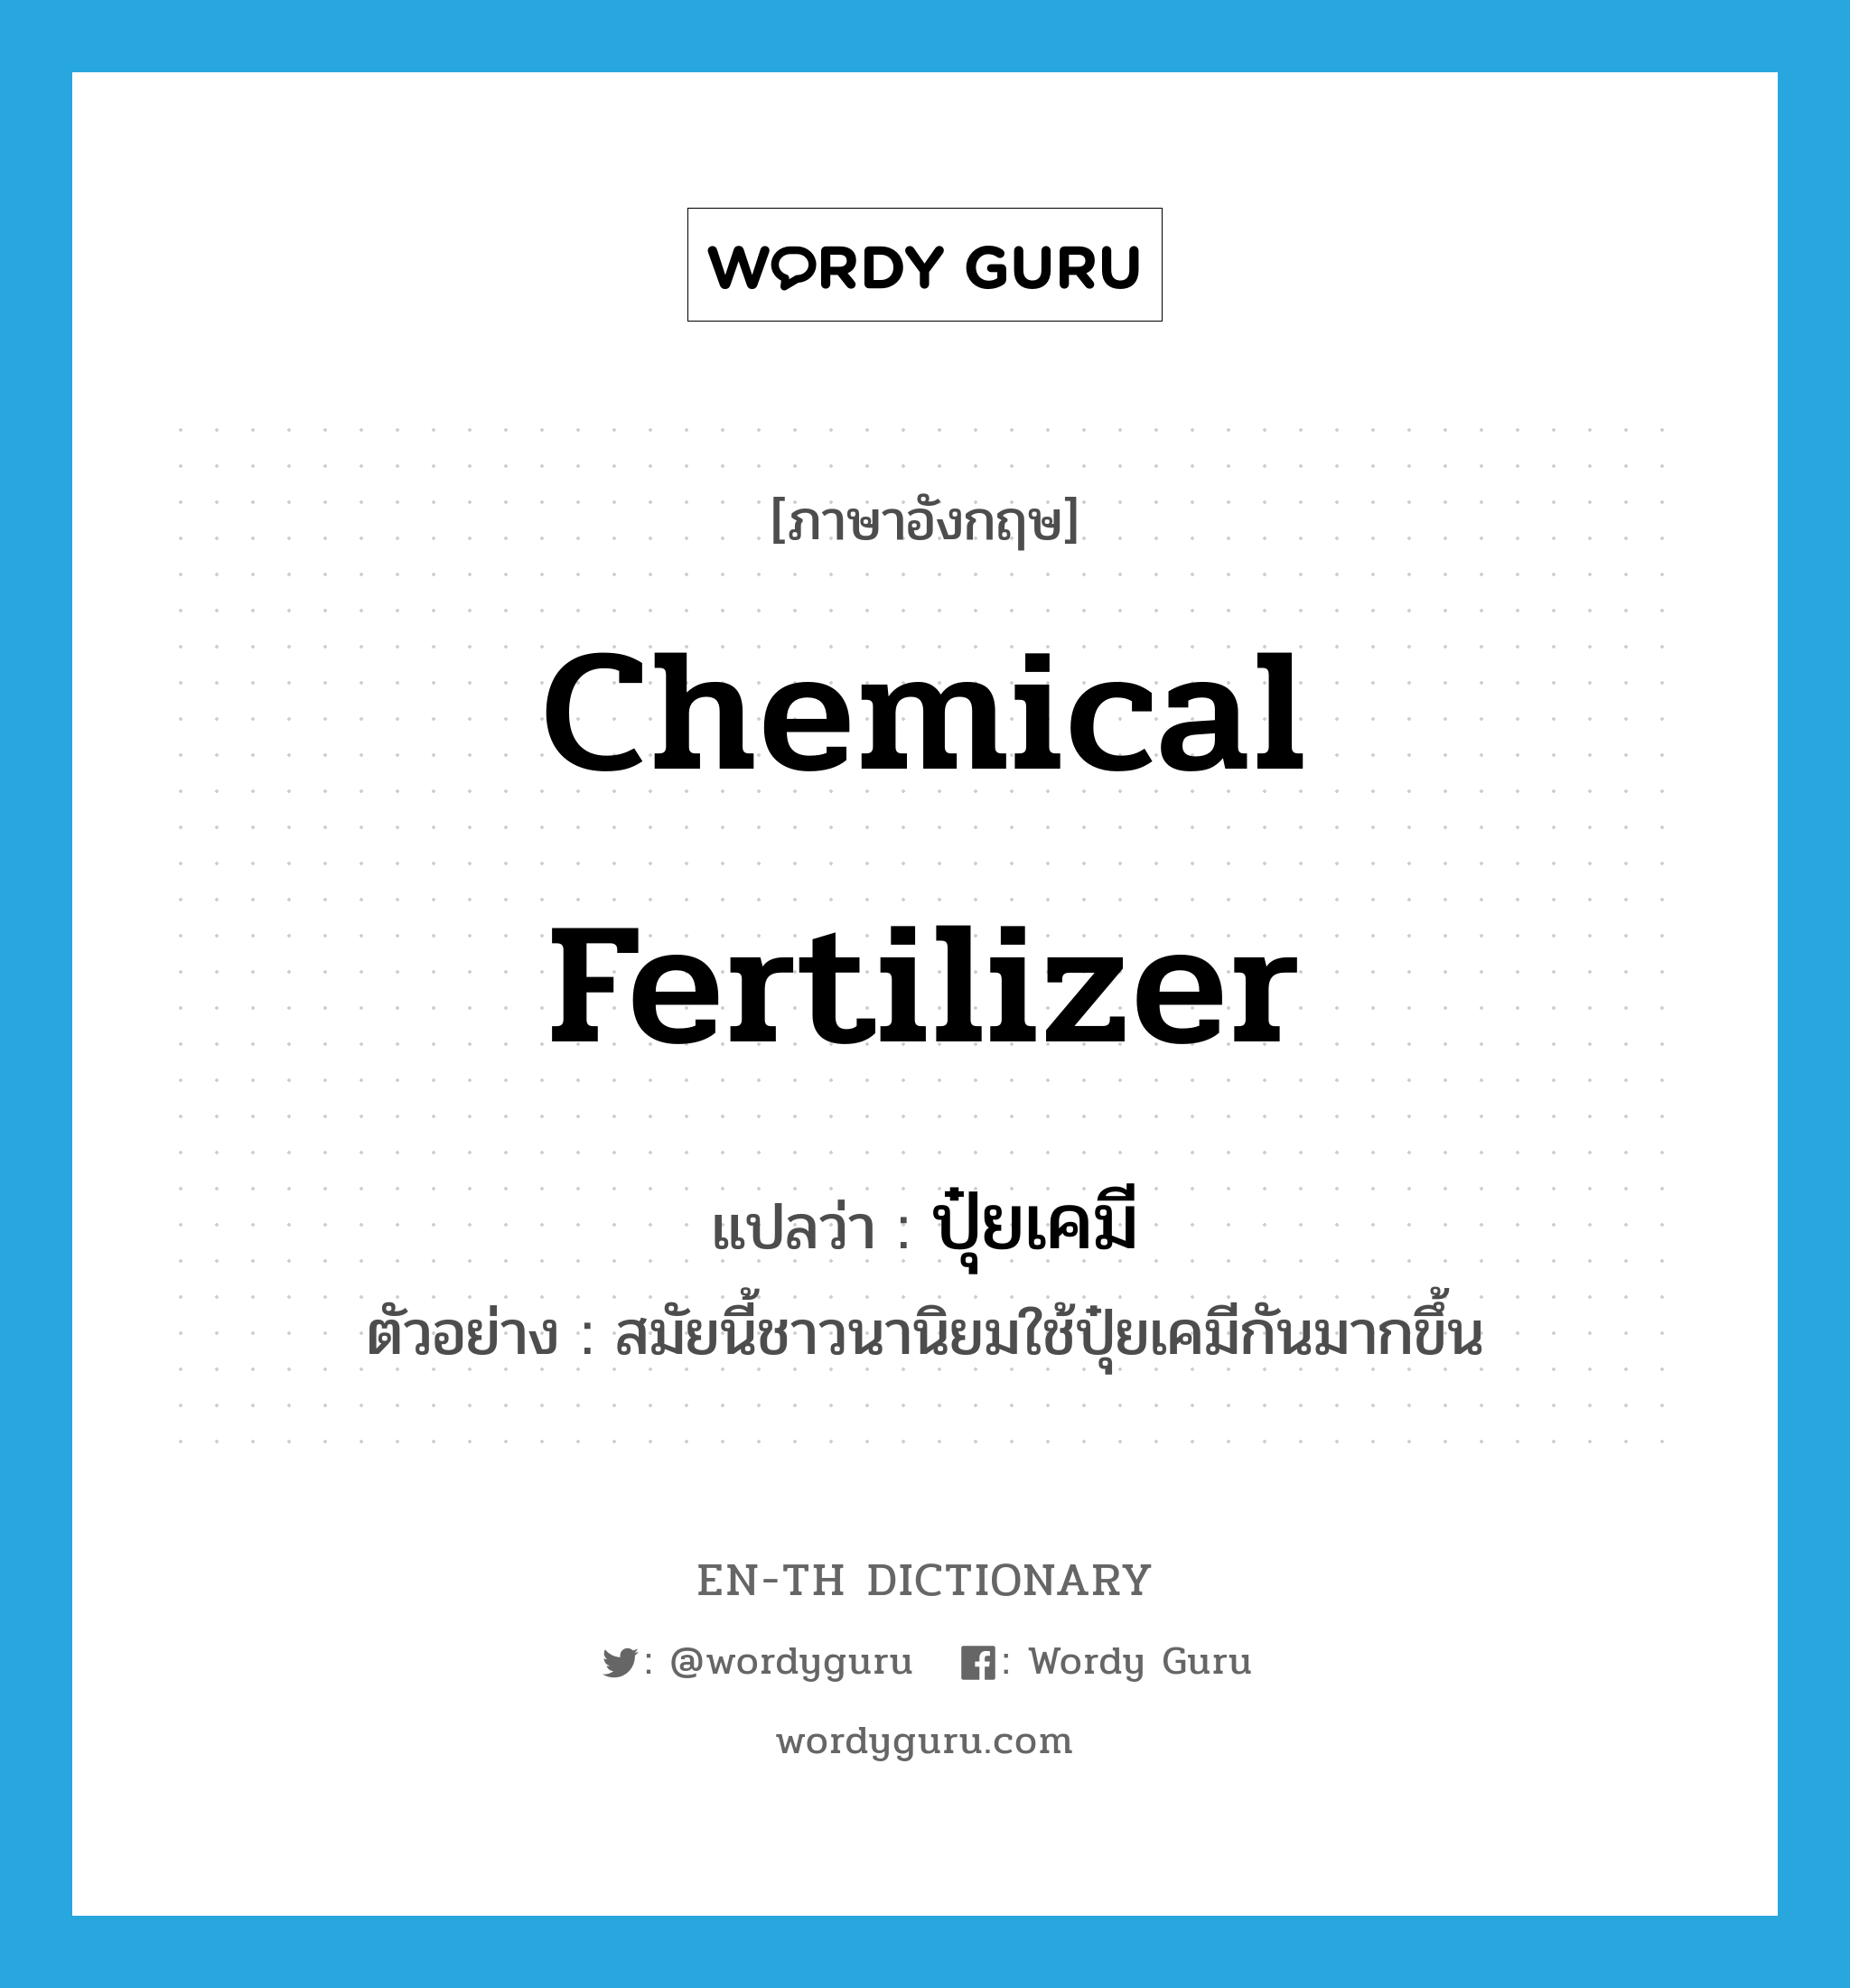 chemical fertilizer แปลว่า?, คำศัพท์ภาษาอังกฤษ chemical fertilizer แปลว่า ปุ๋ยเคมี ประเภท N ตัวอย่าง สมัยนี้ชาวนานิยมใช้ปุ๋ยเคมีกันมากขึ้น หมวด N